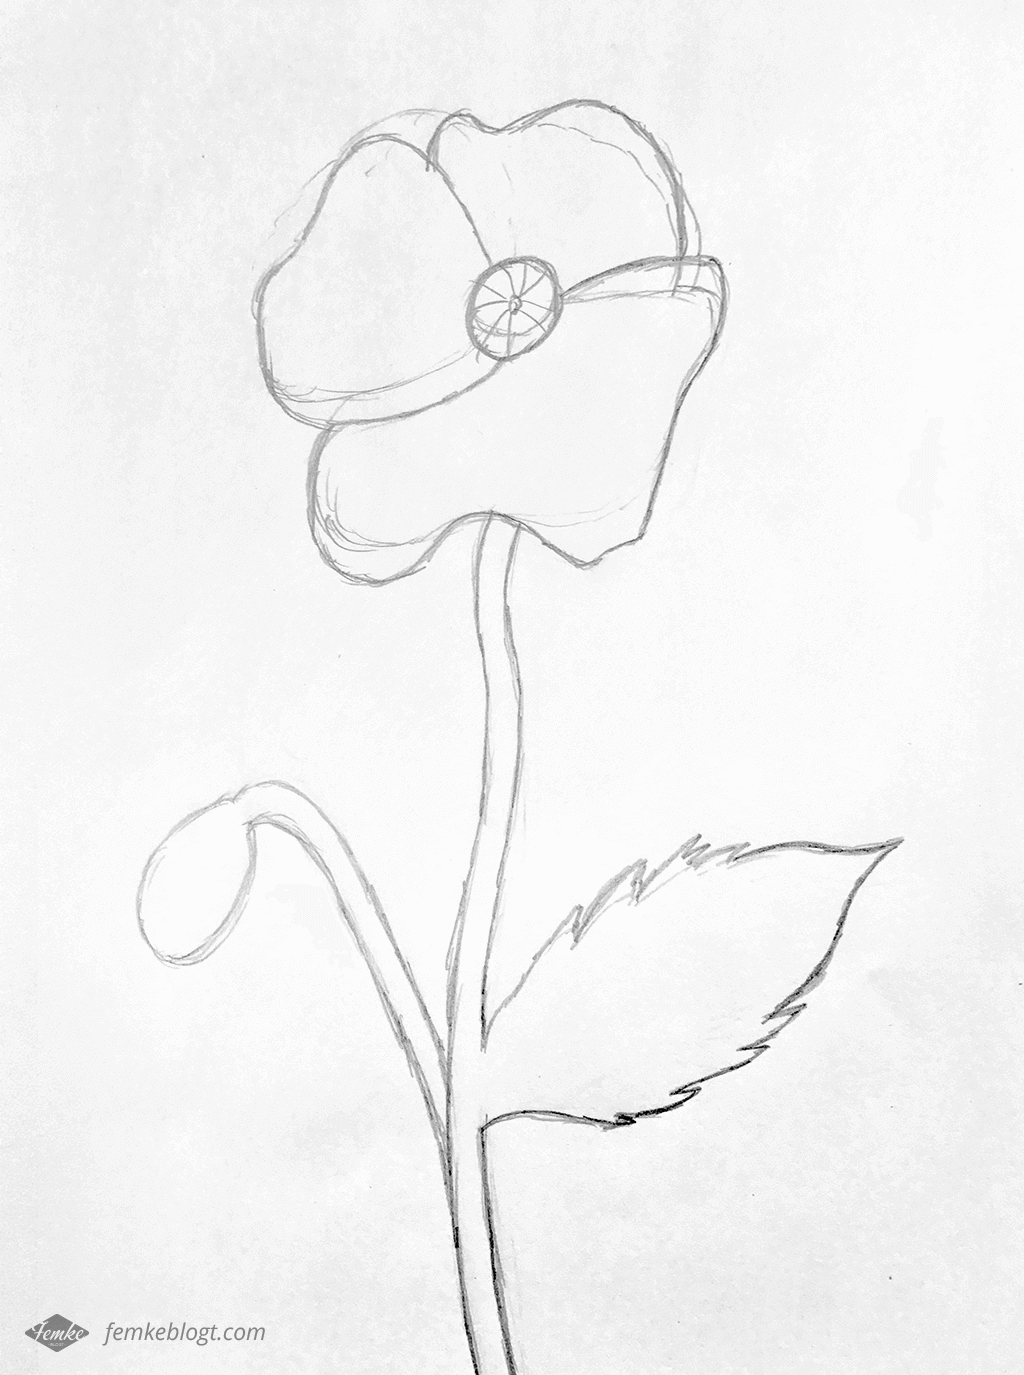 31 Dagen bloemen | Proces tekening klaproos